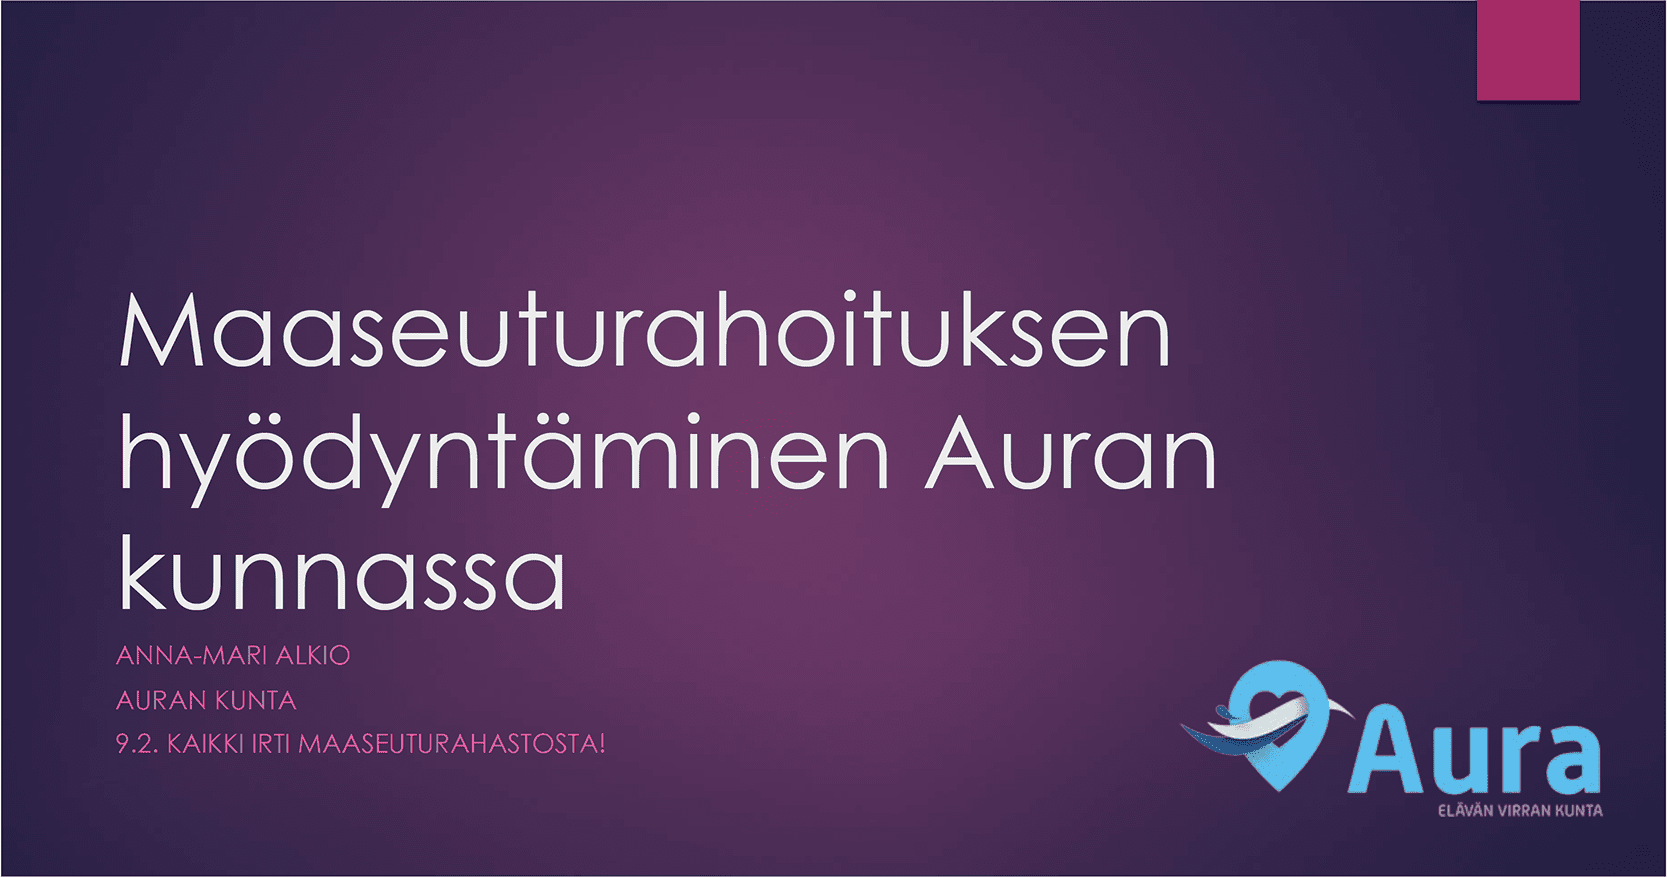 Violetilla pohjalla valkoinen teksti: Maaseuturahoituksen hyödyntäminen Auran kunnassa. Oikeassa alakulmassa Auran kunnan logo.